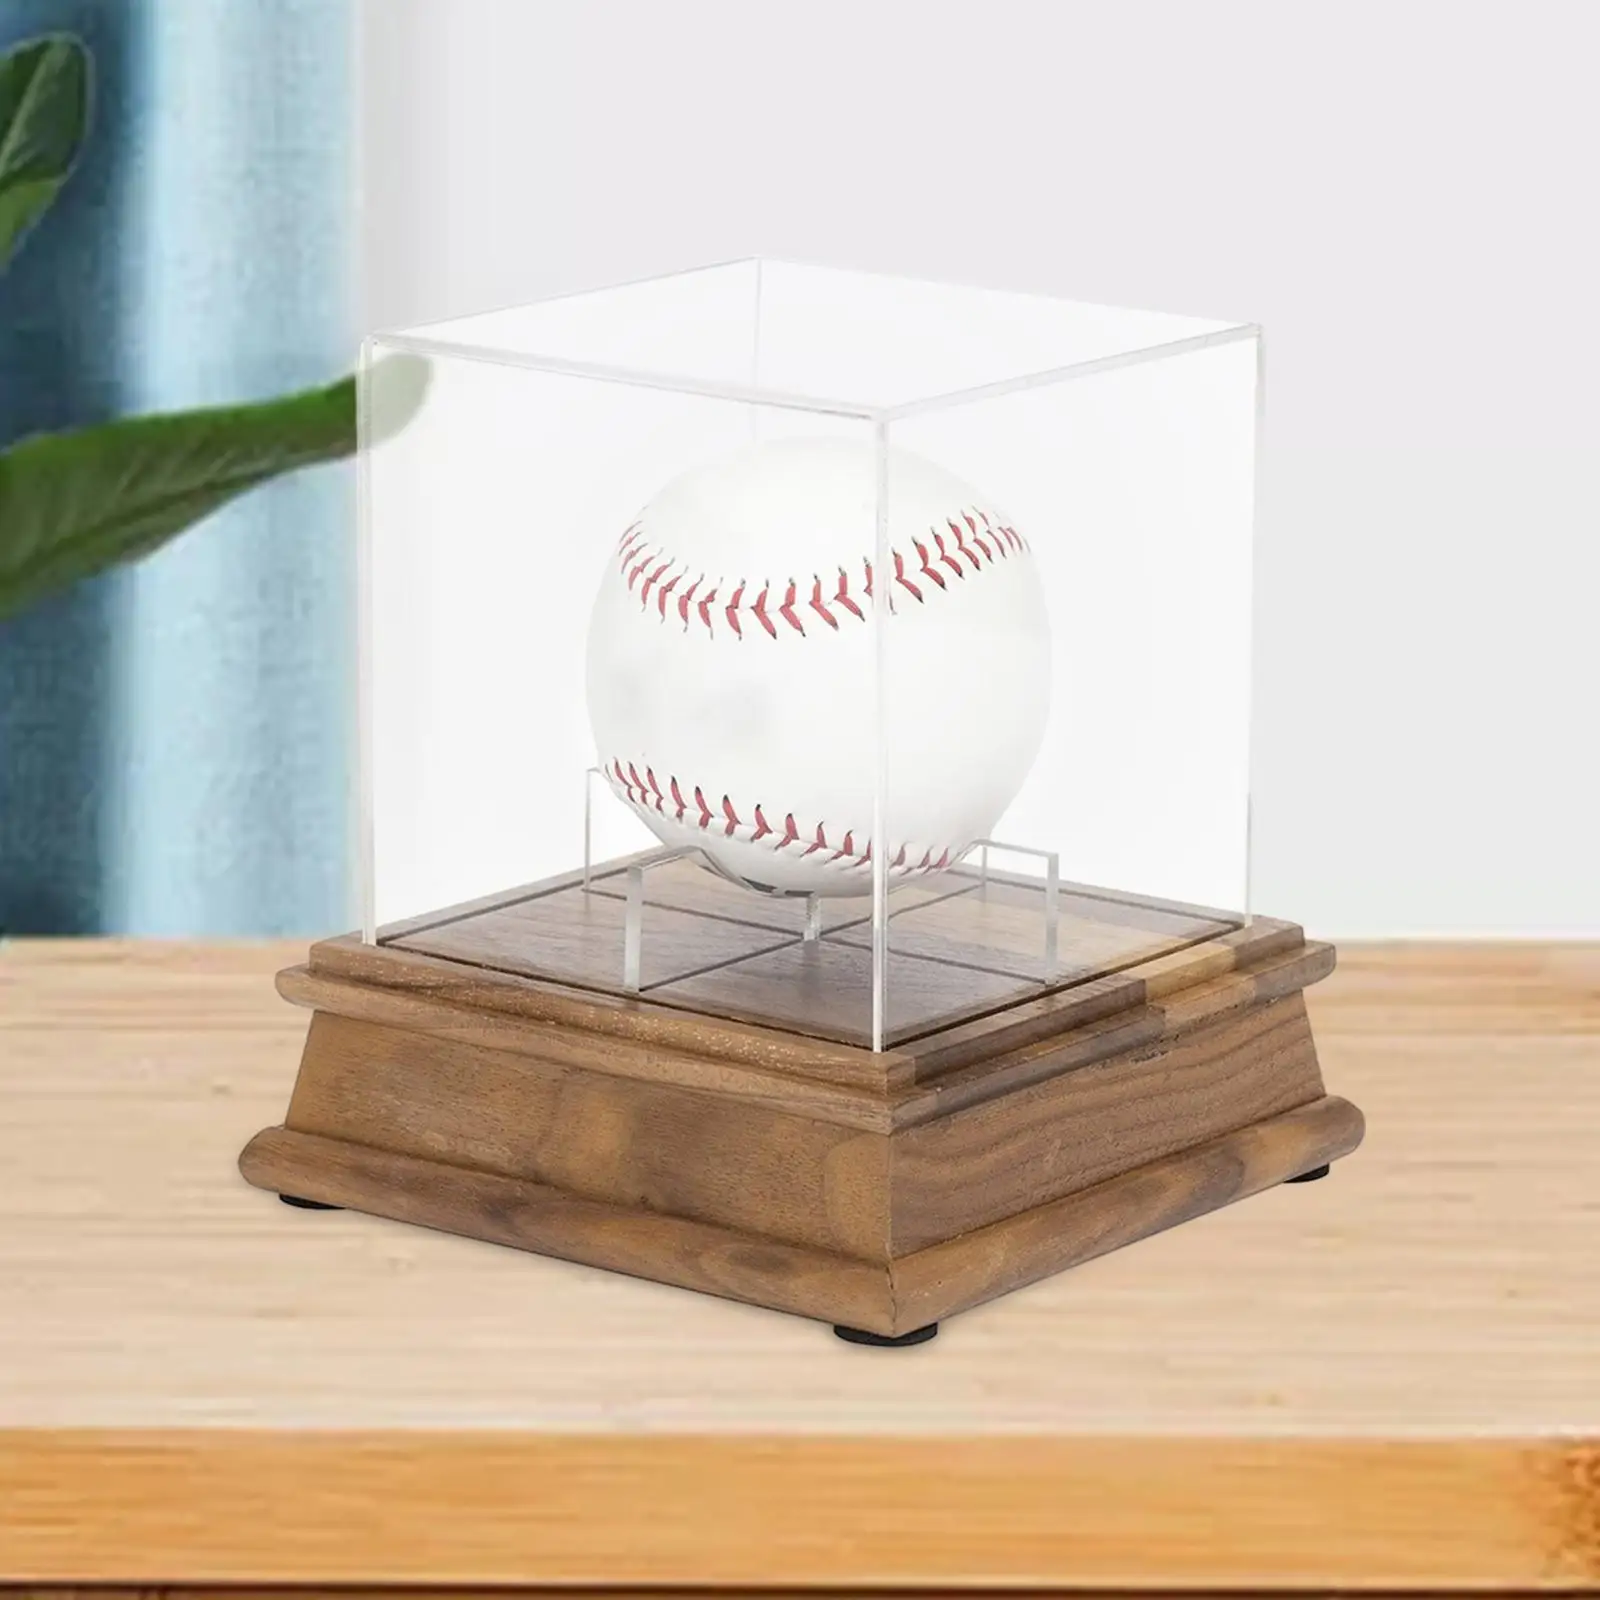 

Дисплей для бейсбола, блестящий акриловый прозрачный держатель для бейсбола официального размера с защитой от пыли и автографом